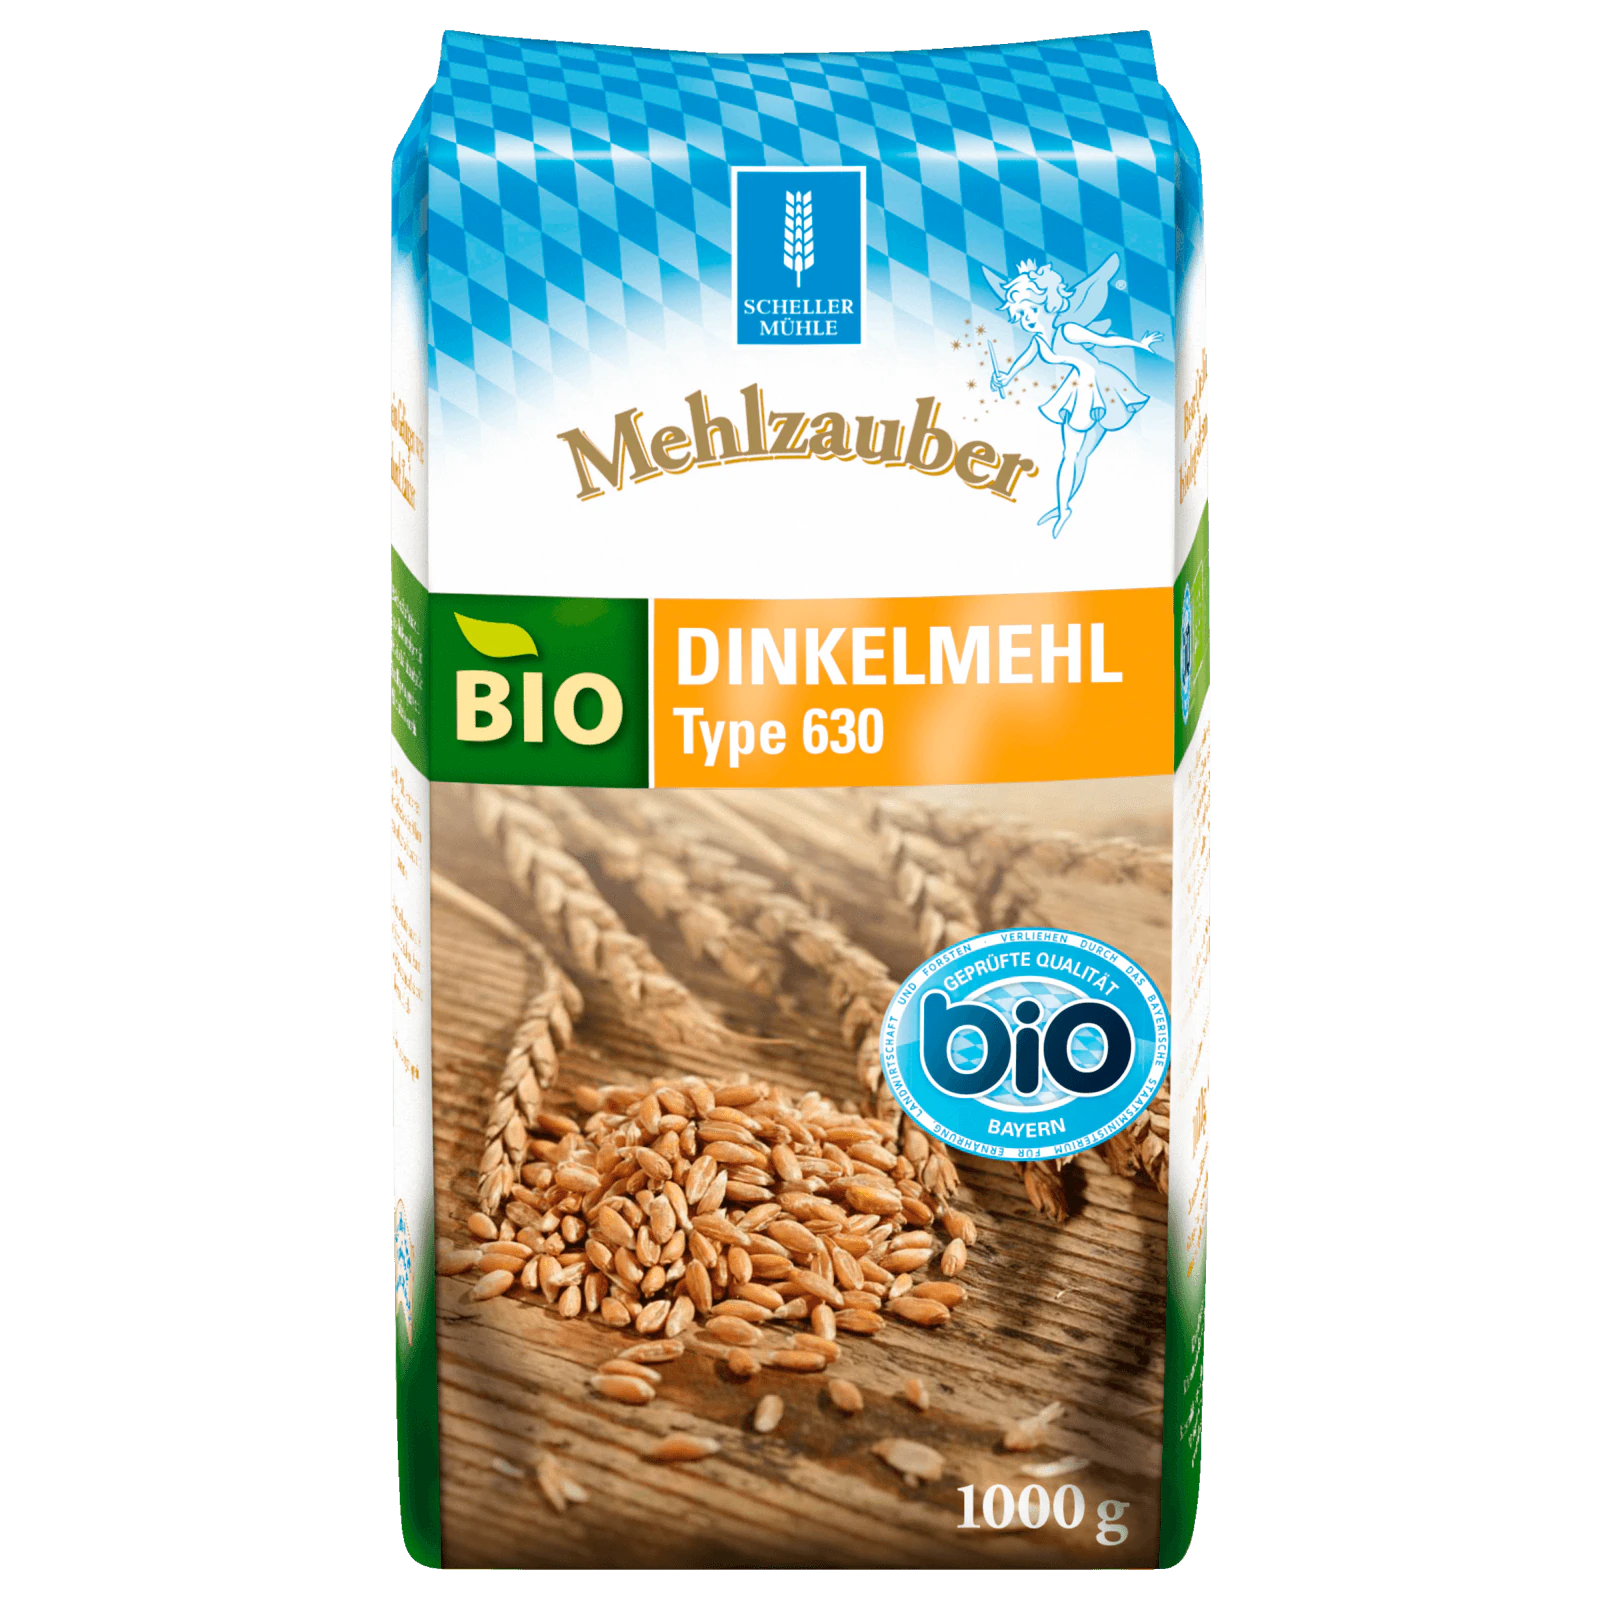 Mehlzauber Bio Dinkelmehl 630 1kg  für 2.29 EUR